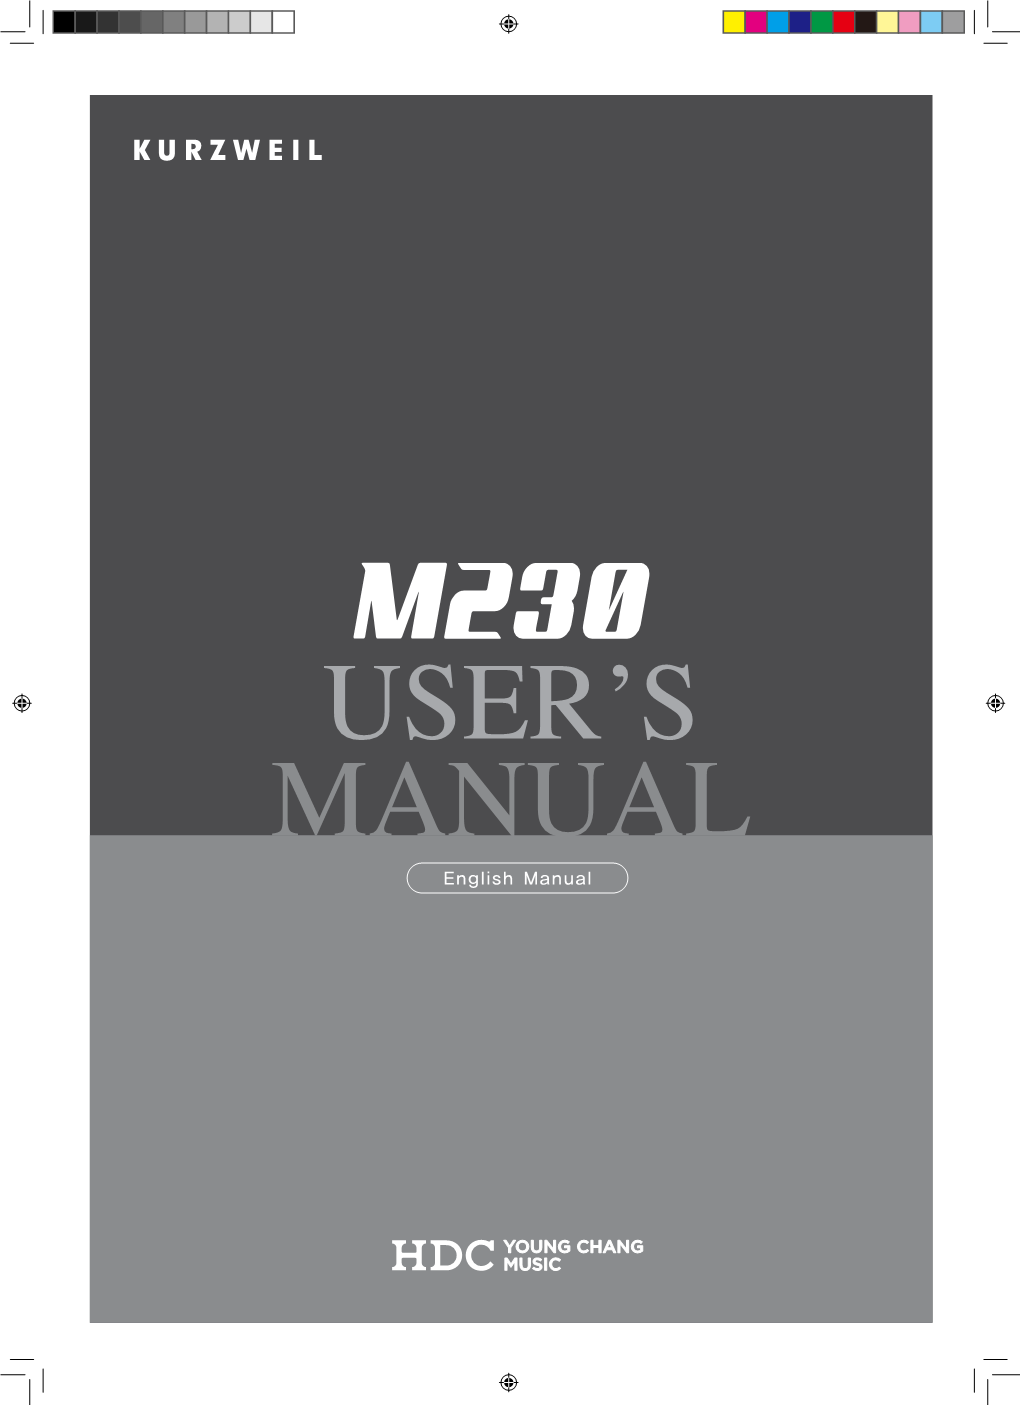 M230 User Manual – 9.7 MB